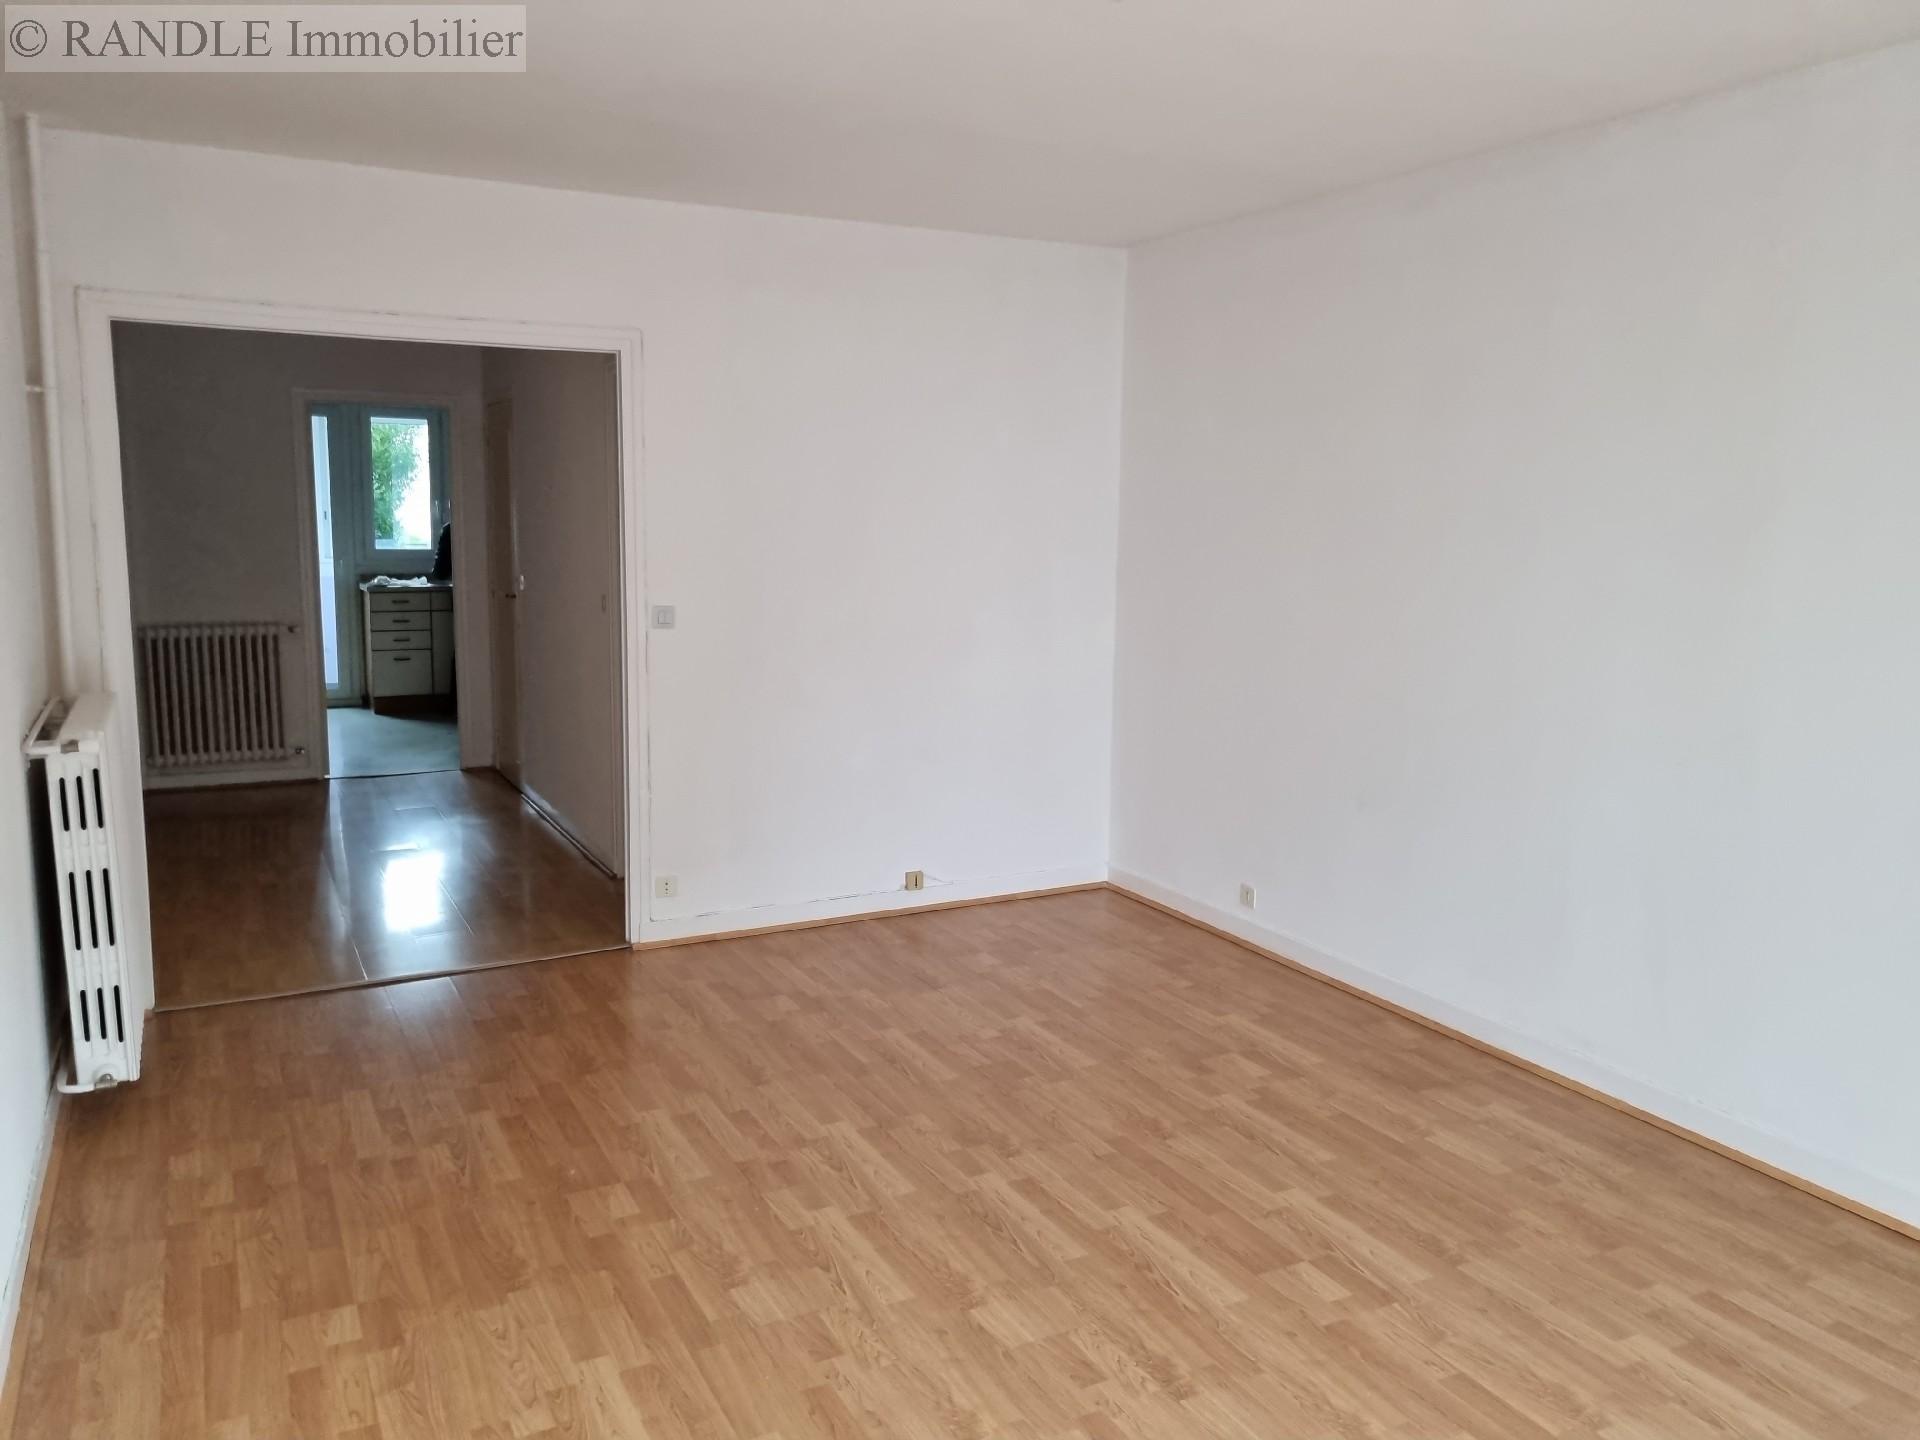 Vente appartement - LORIENT 76 m², 3 pièces